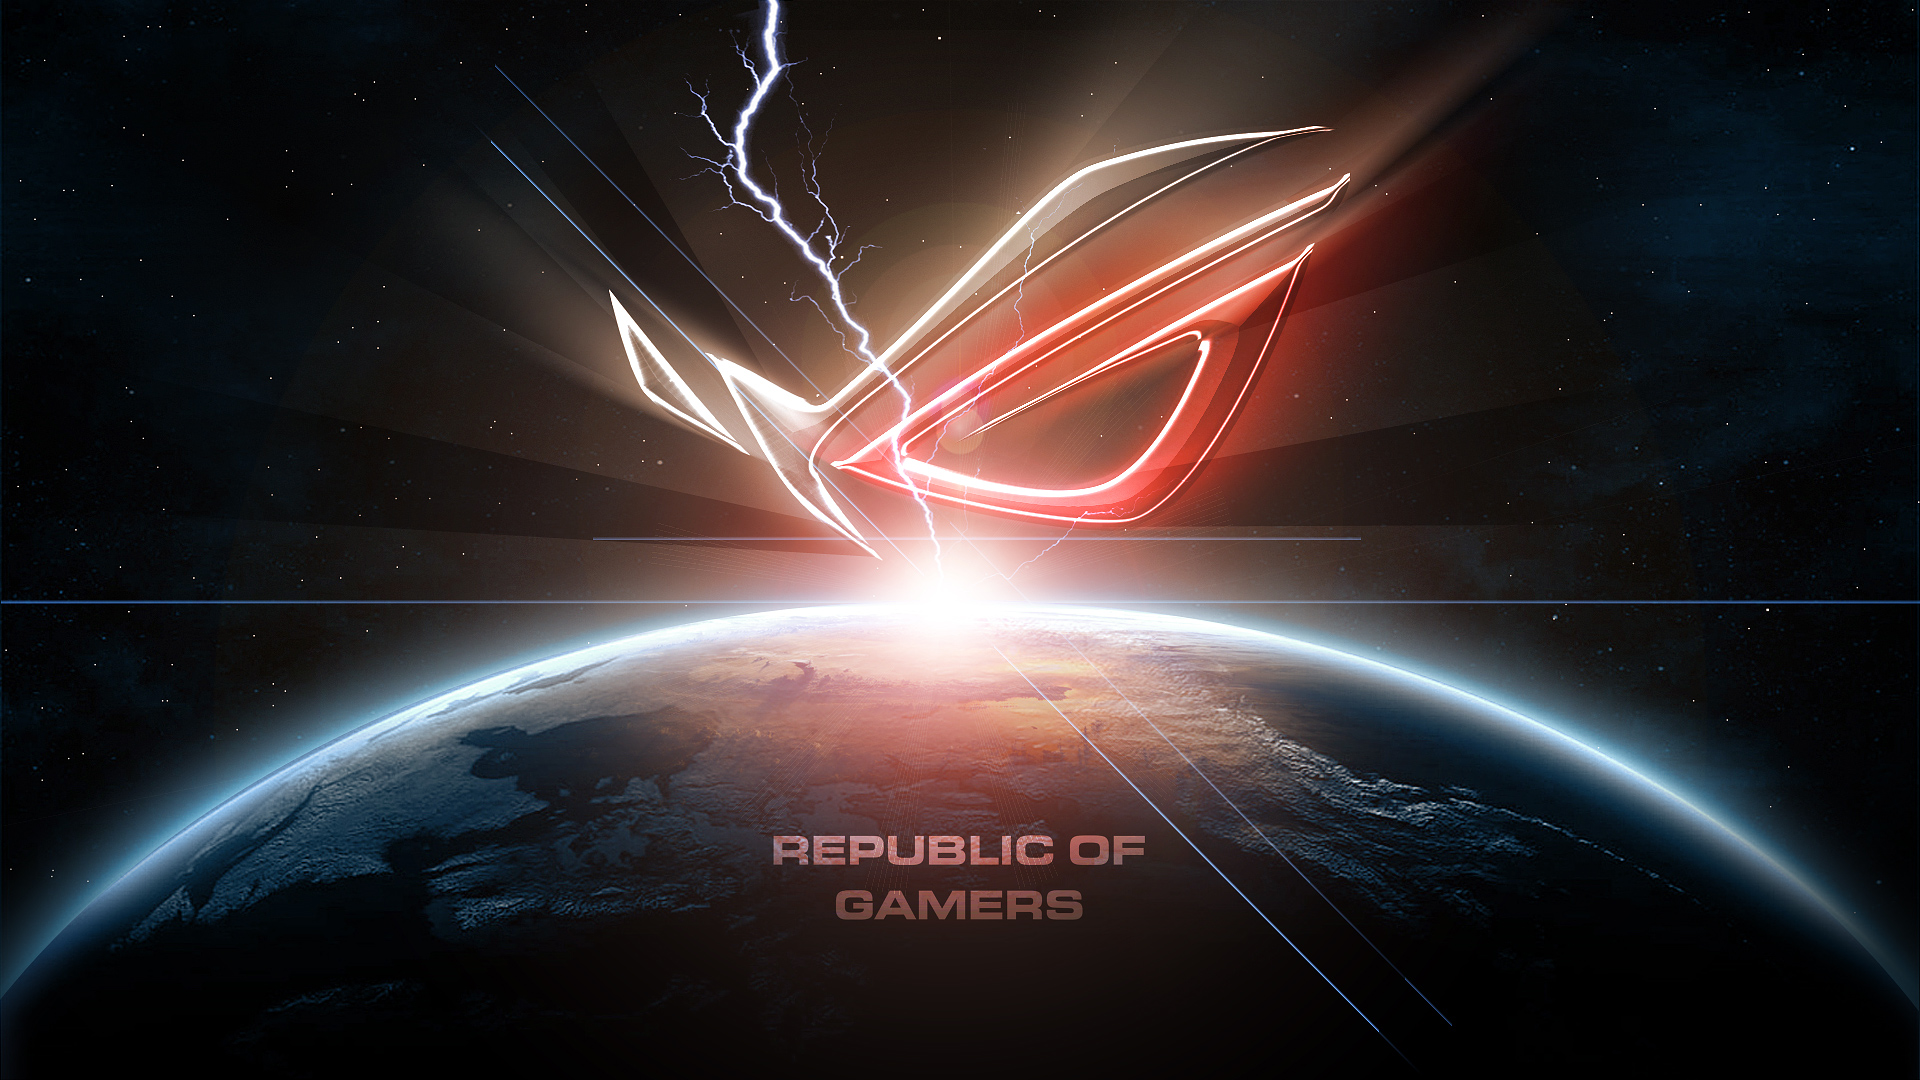 Republic of Gamers HD Wallpaper - WallpaperSafari